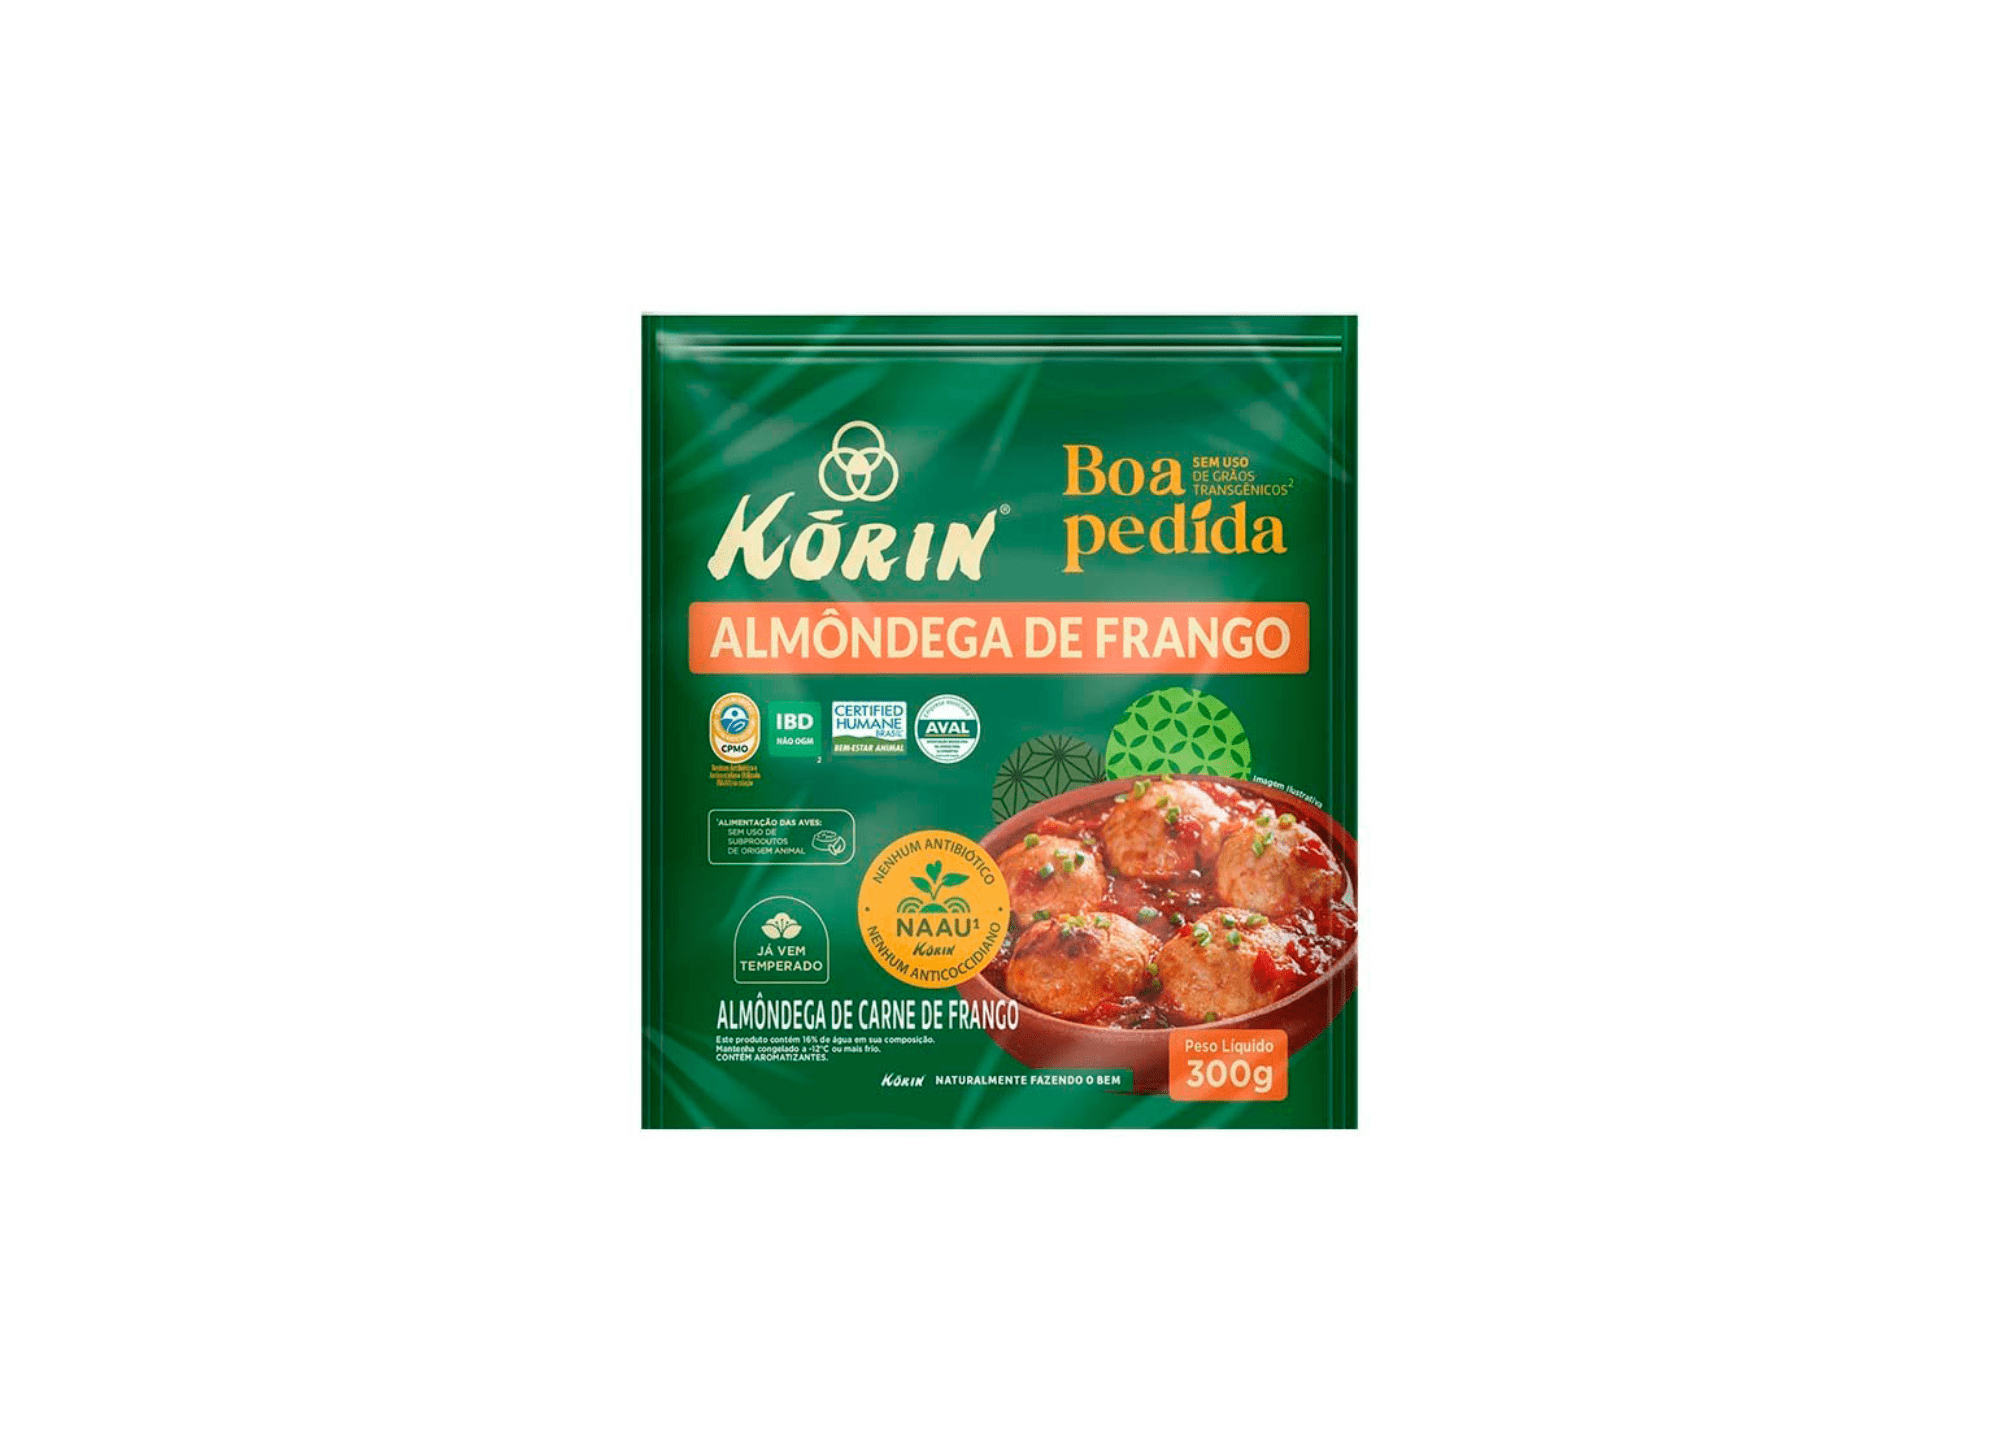 Featured image for “Korin traz novidade na linha Boa Pedida com inovação no sabor”